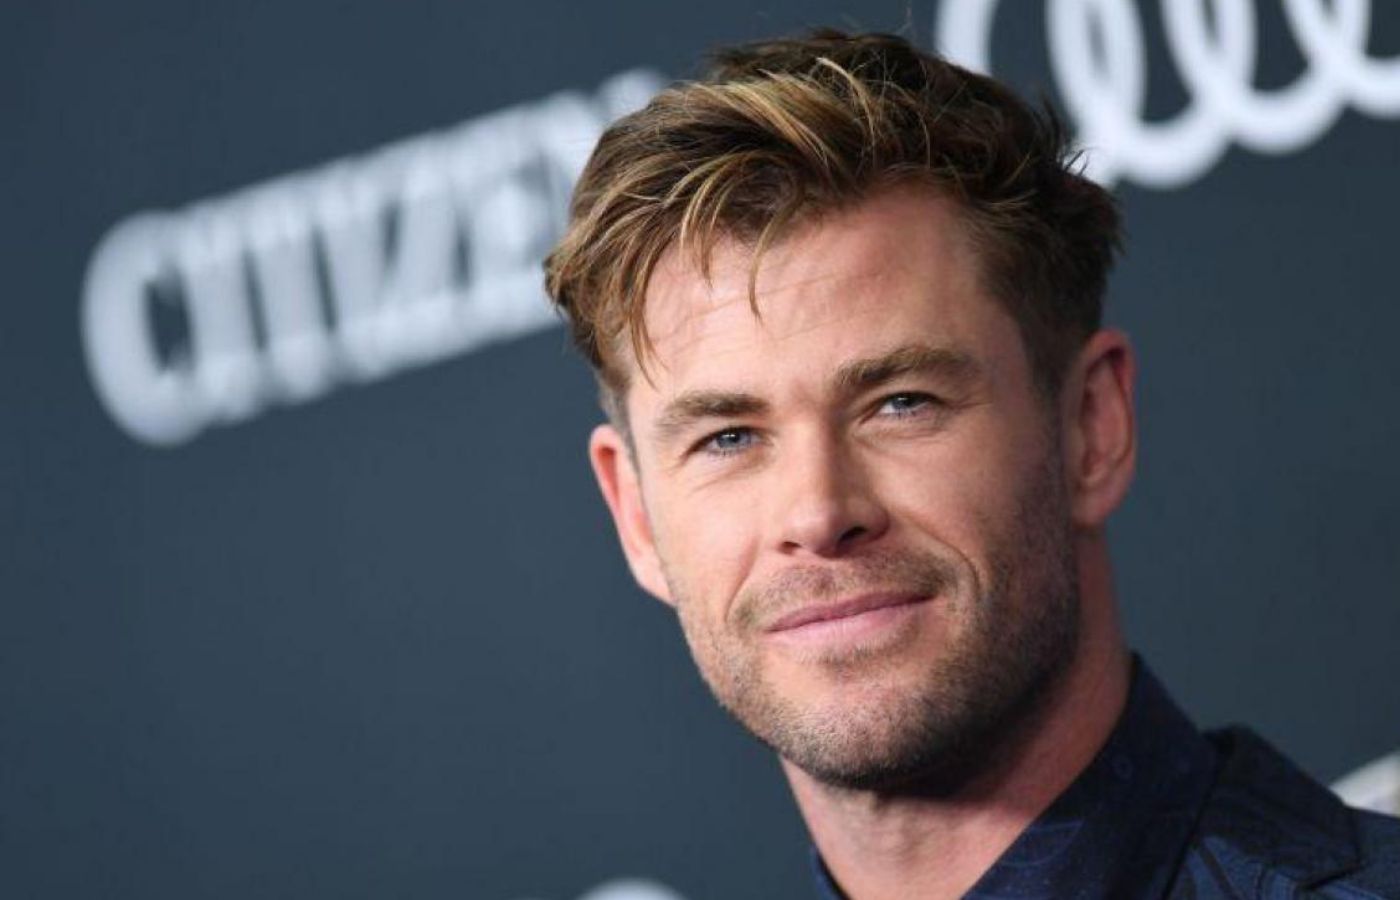 Chris Hemsworth: Biografia reúne curiosidades